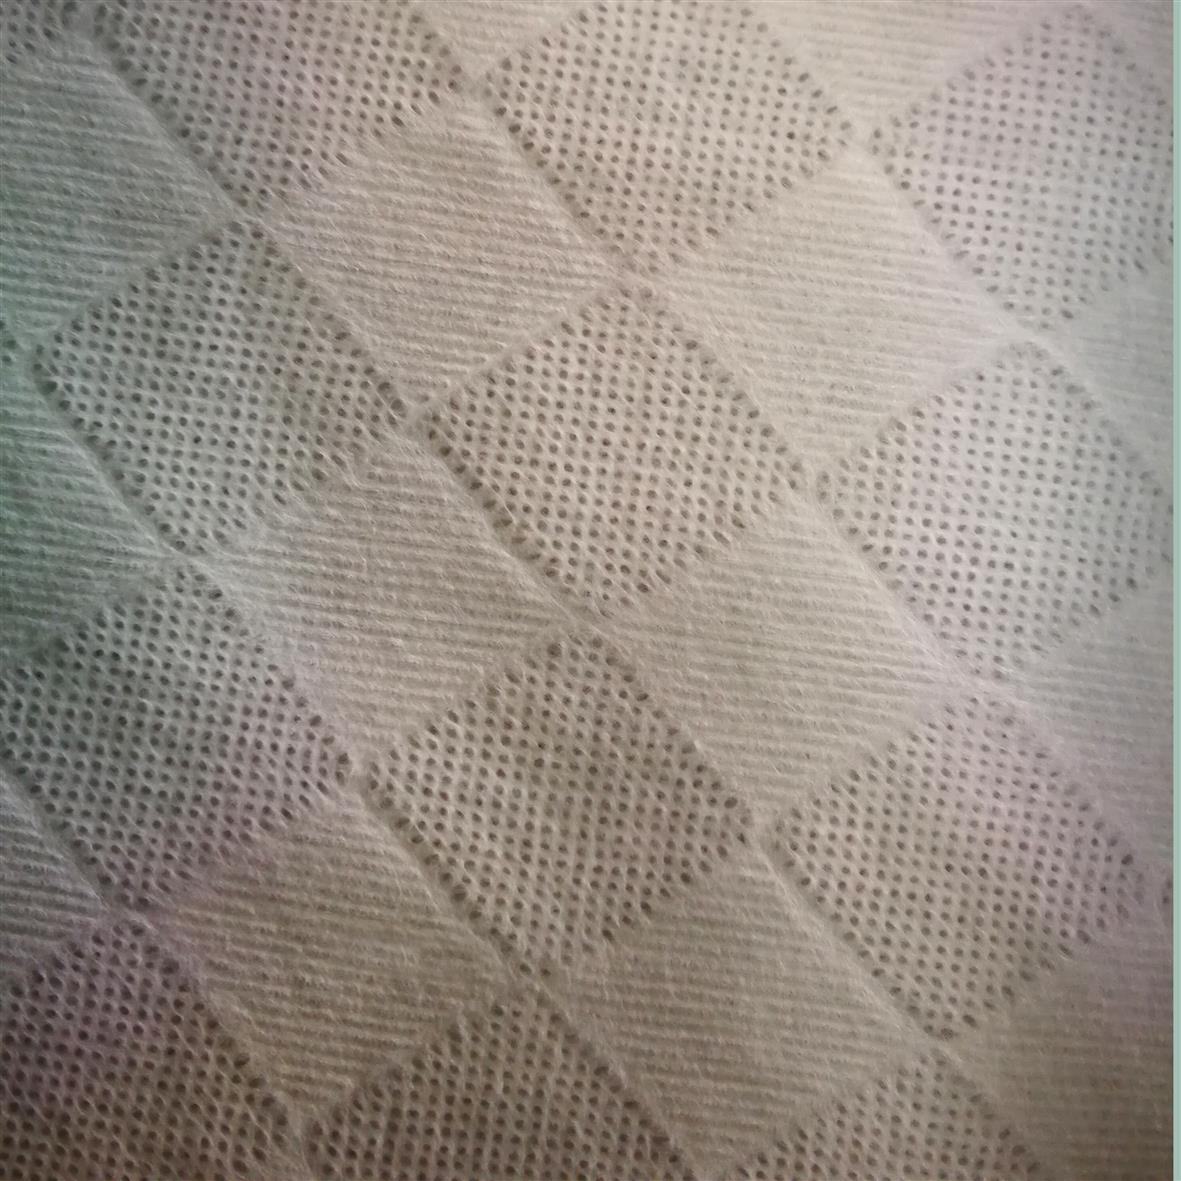 多系列竹纤维水刺无纺布公司 竹纤维珍珠纹湿巾布 水刺布